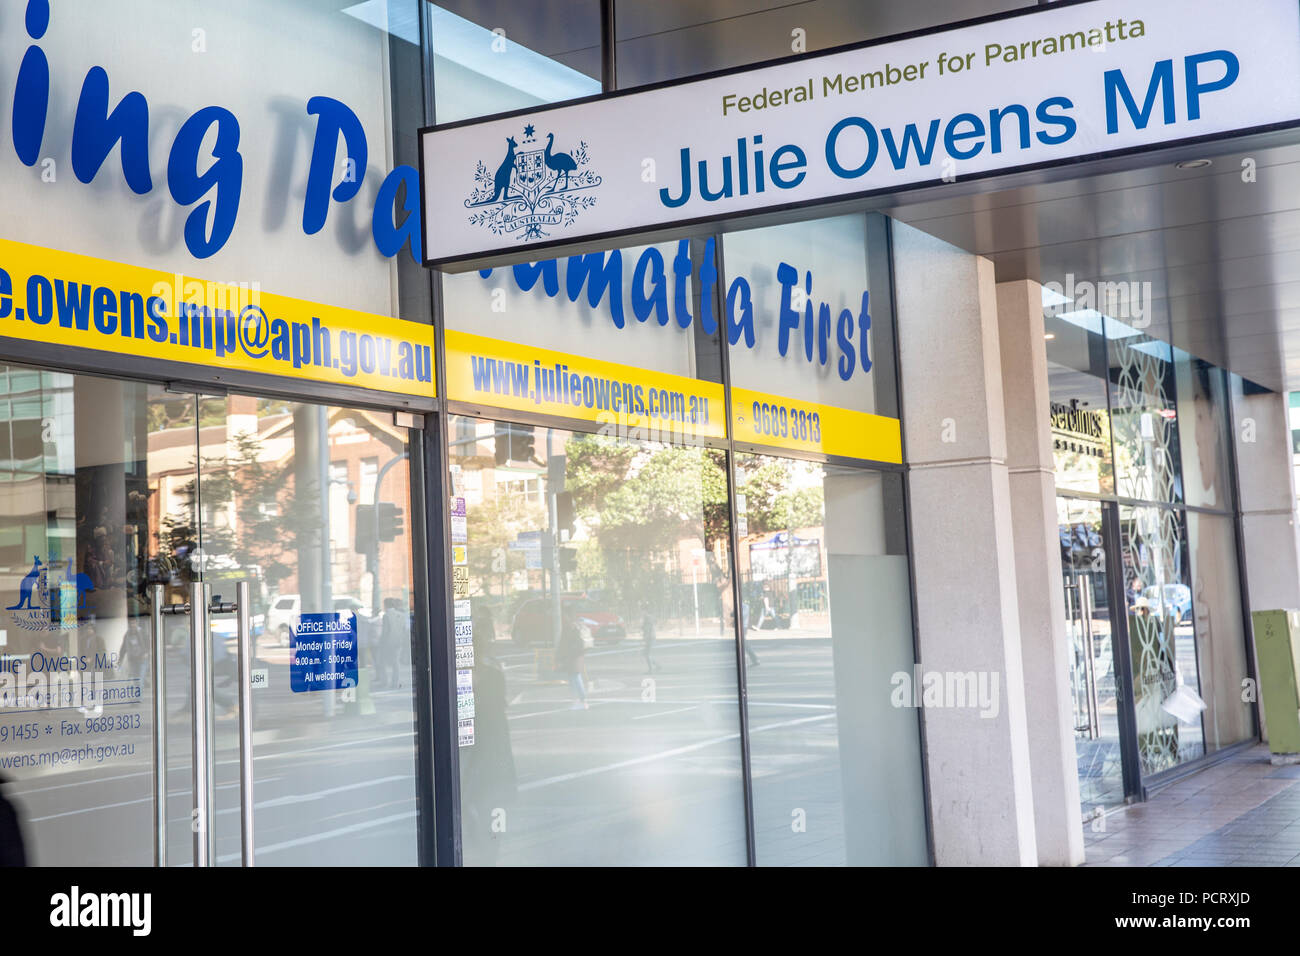 Office de Tourisme de Parramatta Julie Owens MP,Membre du Parti travailliste fédéral australien, Australie Banque D'Images